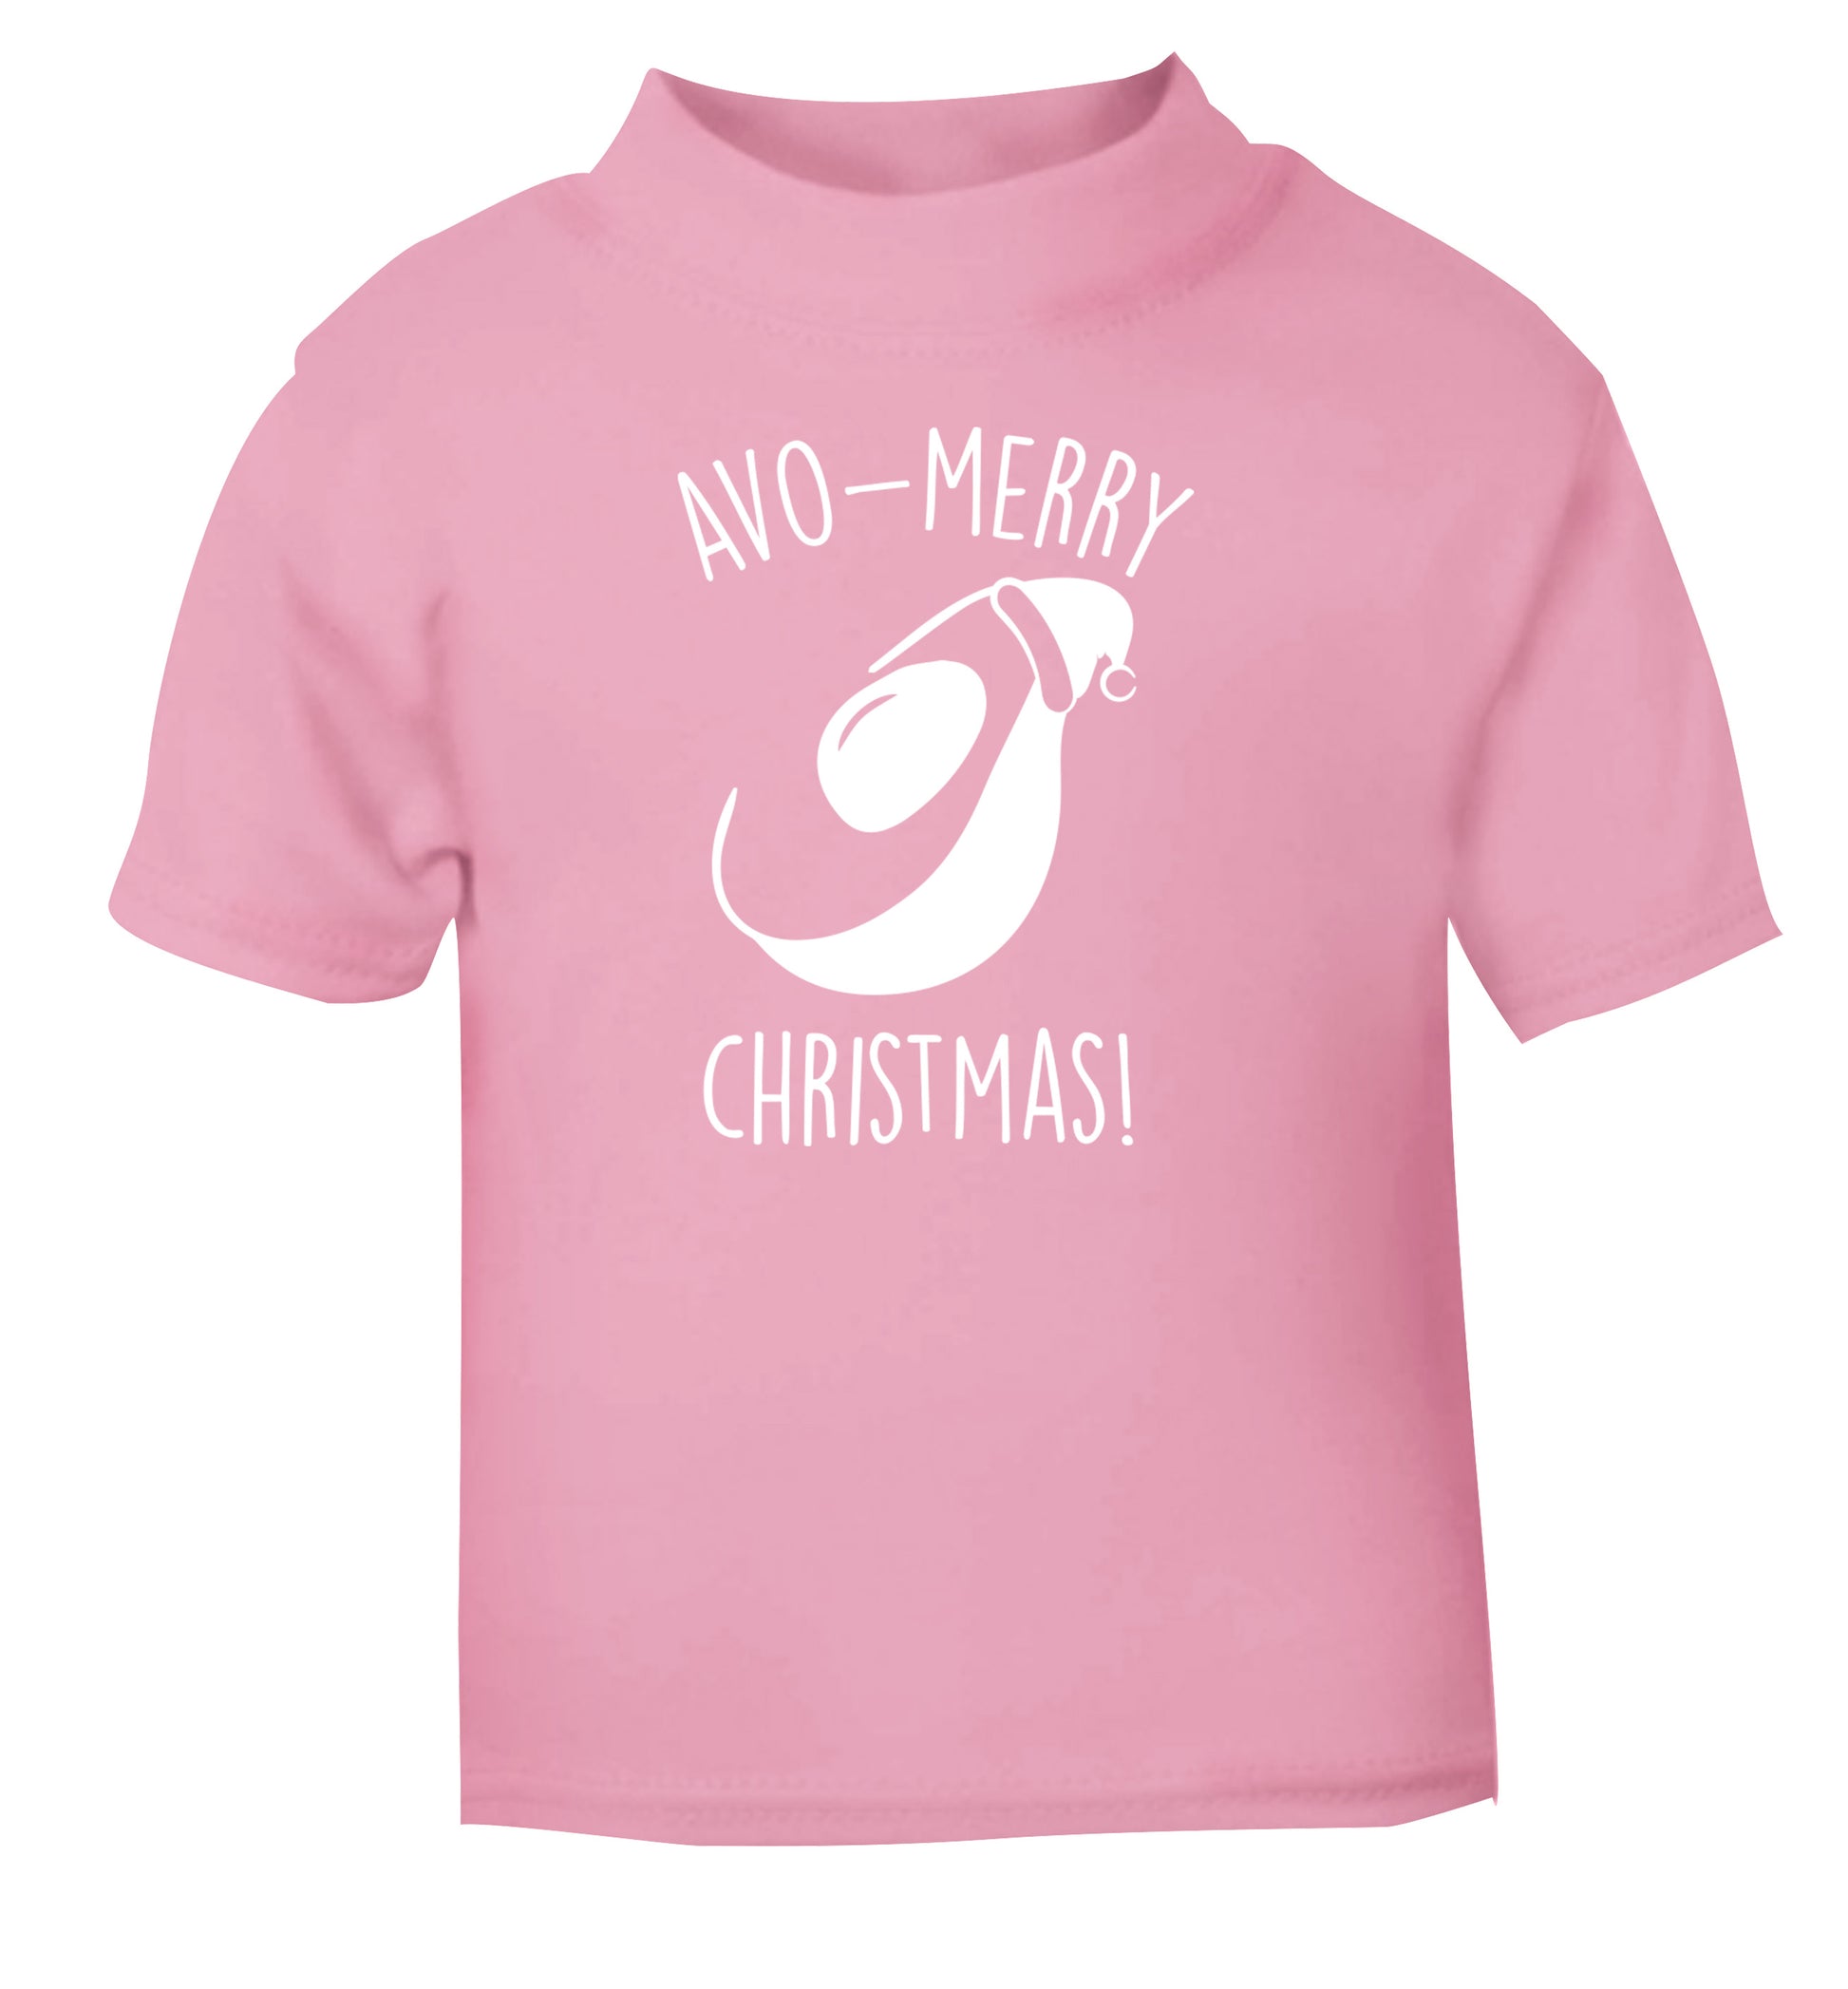 Avo-Merry Christmas light pink Baby Toddler Tshirt 2 Years